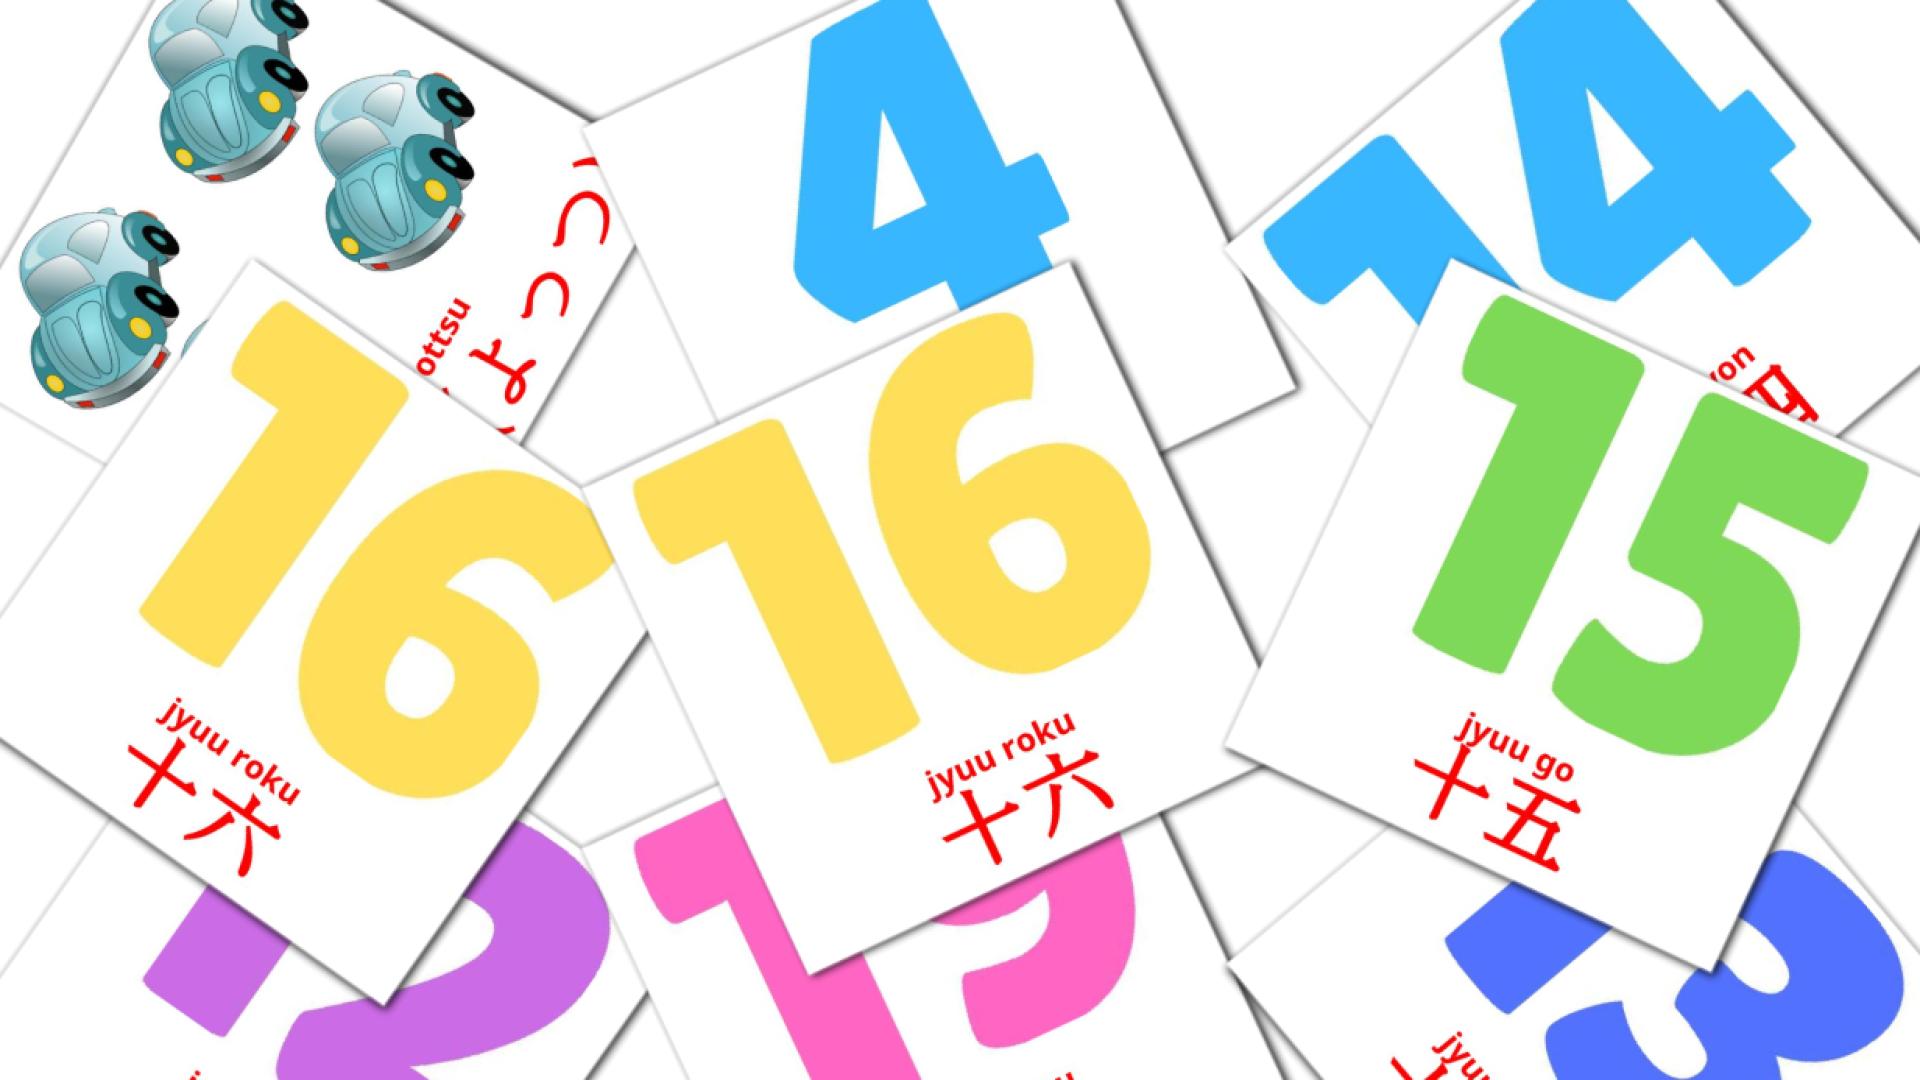 Bildkarten für 数学 (Sūgaku)